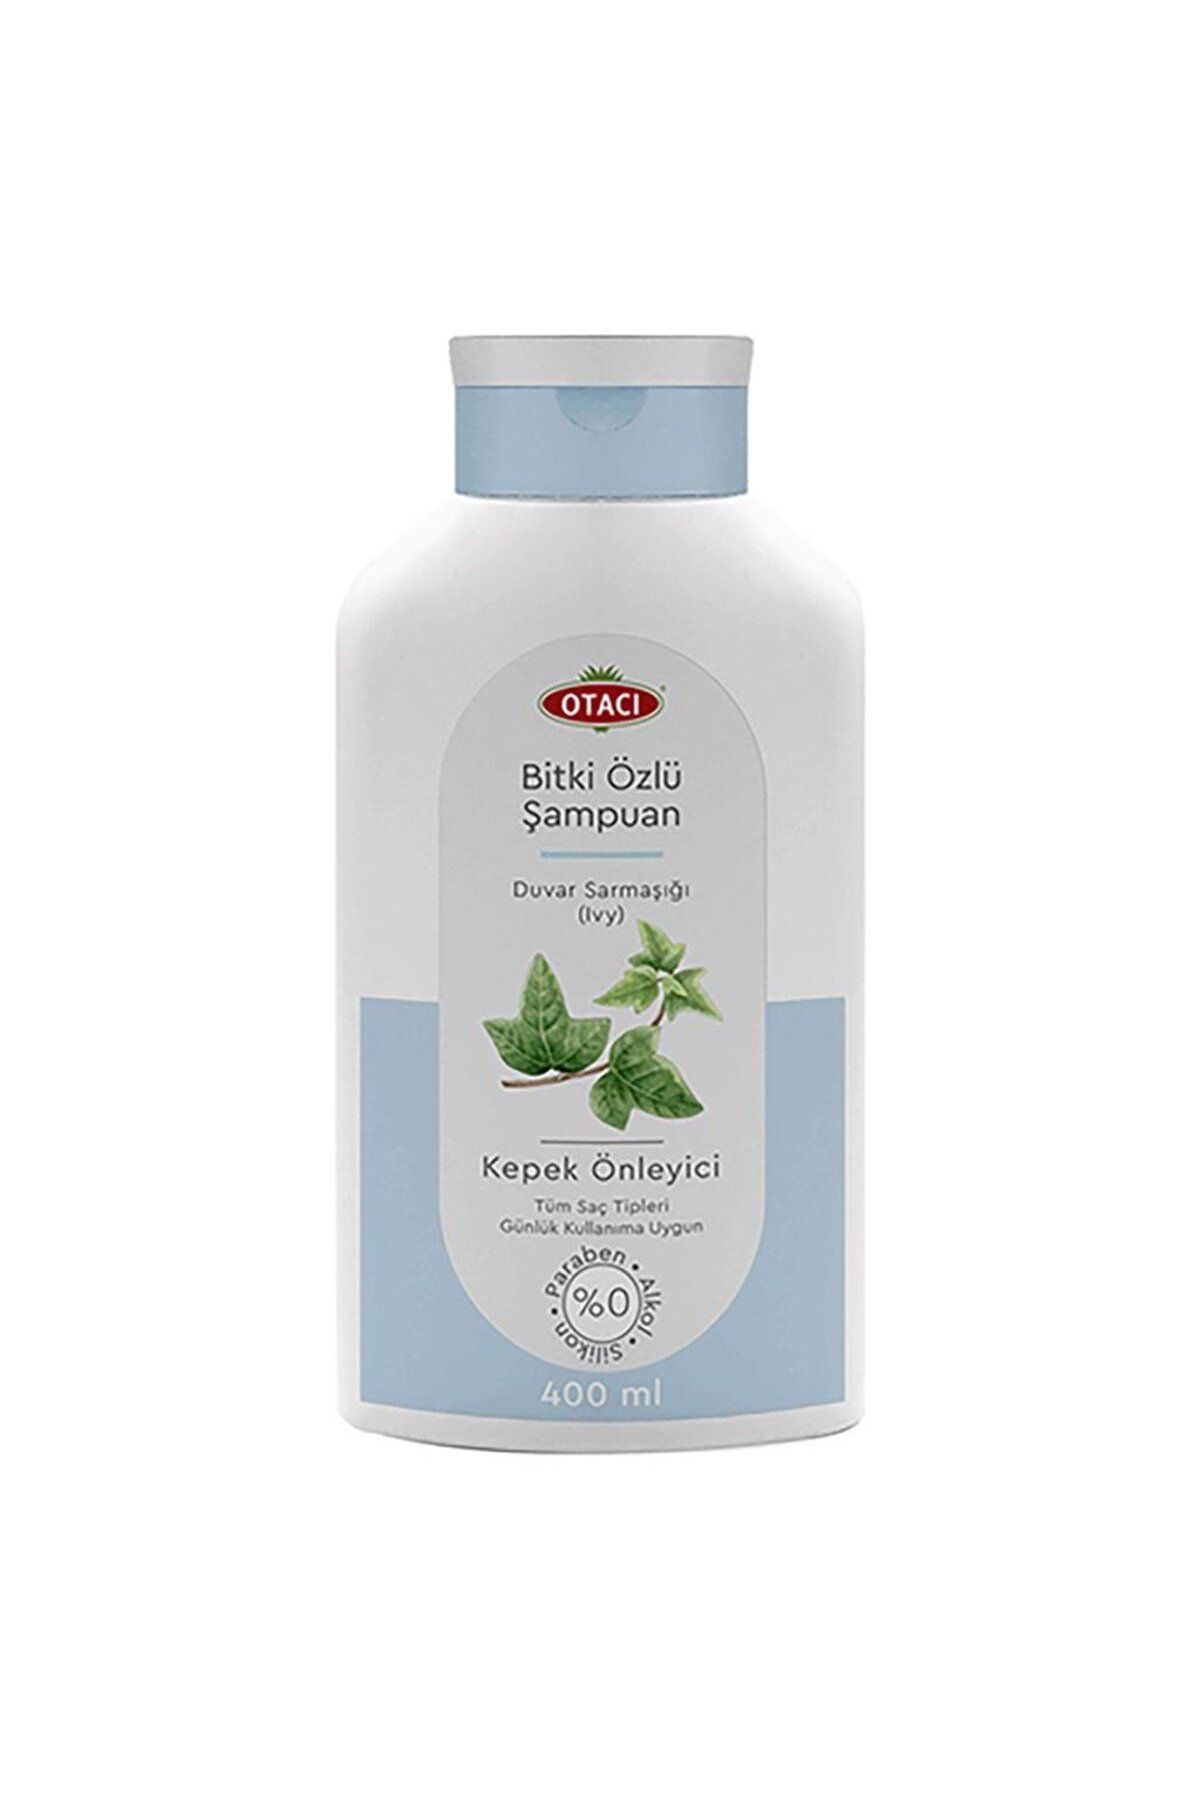 Otacı Ivy Kepeğe Karşı Etkili Şampuan 400 ml